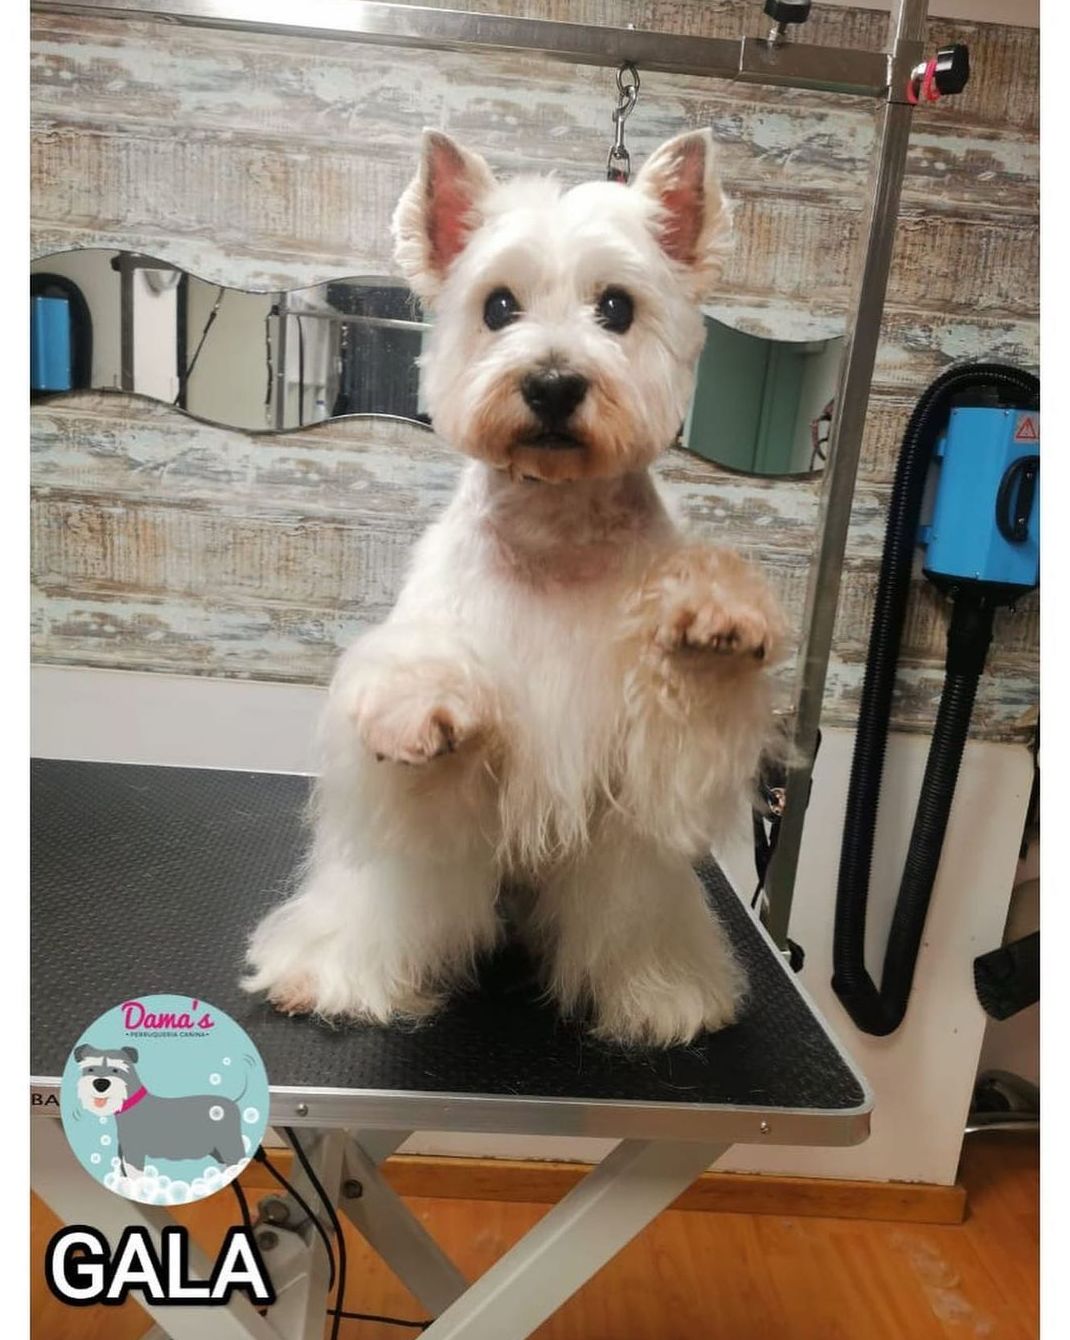 Foto 81 de Peluquería canina con todo tipo de tratamientos para tu mascota en  | Dama's